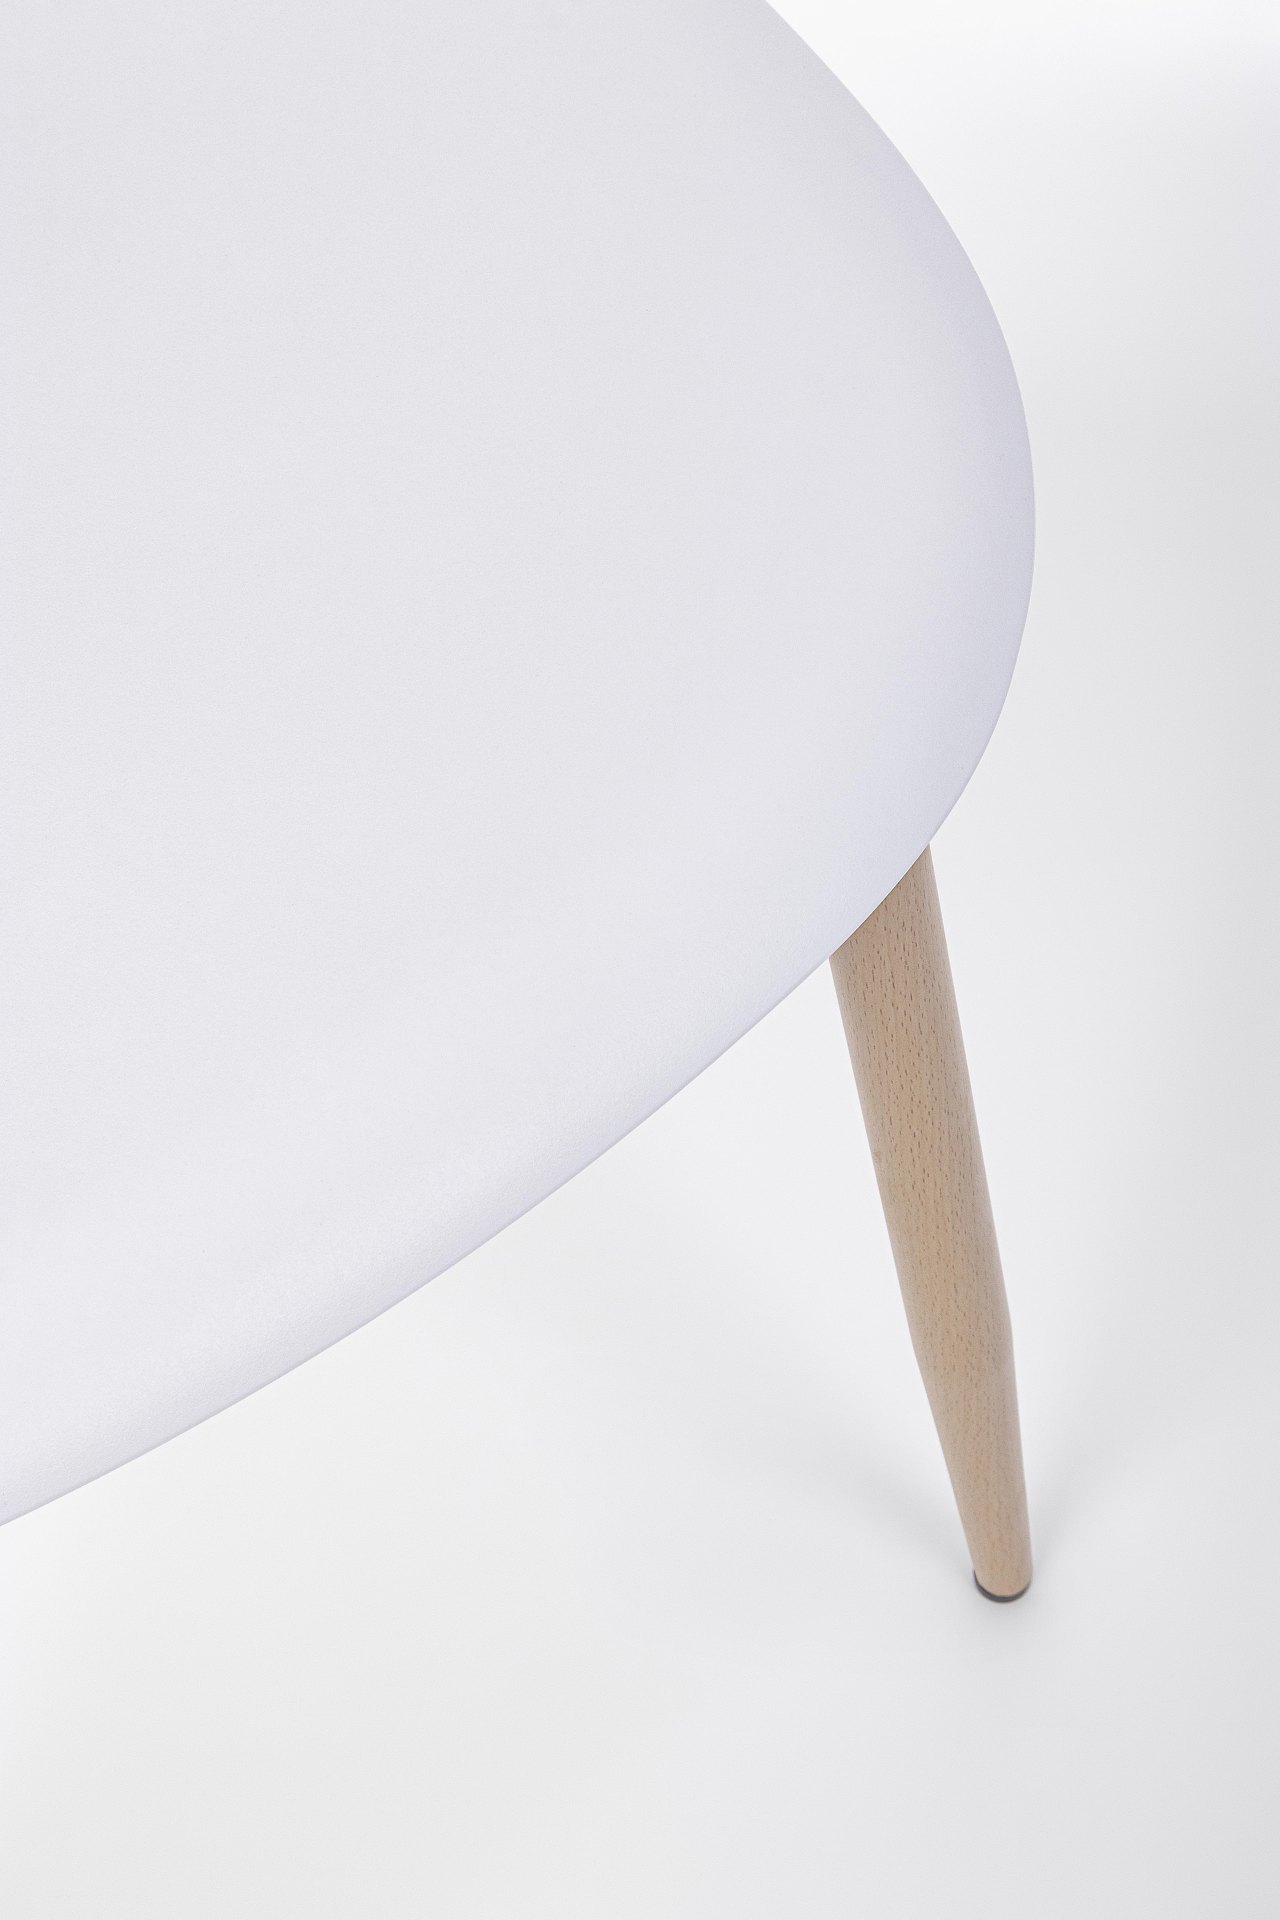 Der Stuhl Mandy überzeugt mit seinem modernem Design. Gefertigt wurde der Stuhl aus Kunststoff, welcher einen weißen Farbton besitzt. Das Gestell ist aus Metall, welches eine Holz-Optik besitzt. Die Sitzhöhe des Stuhls ist 45 cm.